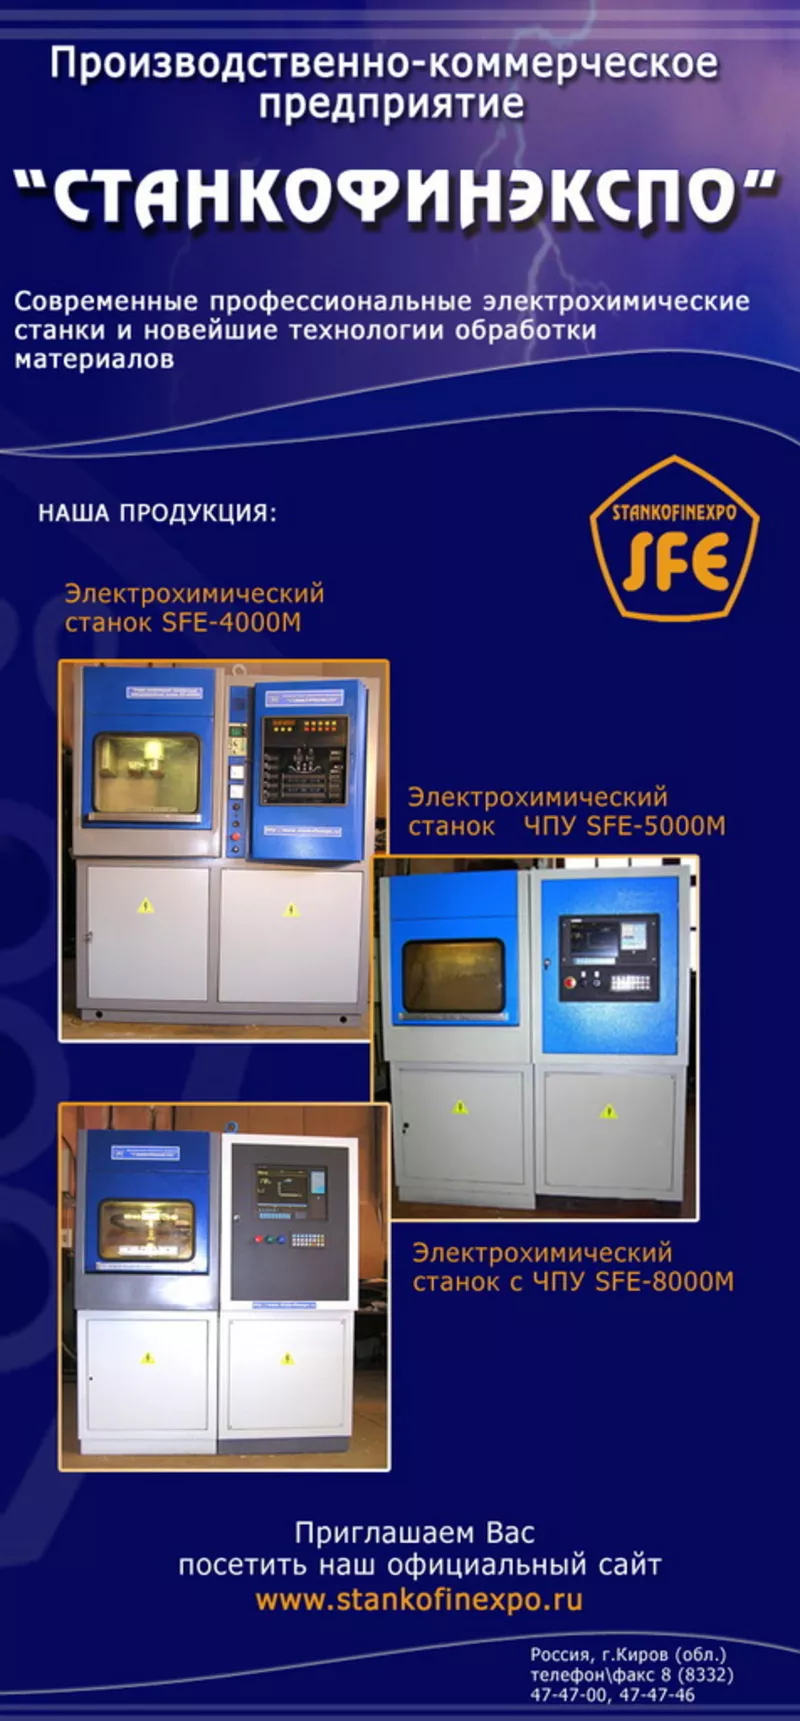 Электрохимический станок SFE для изготовления штамповой оснастки.